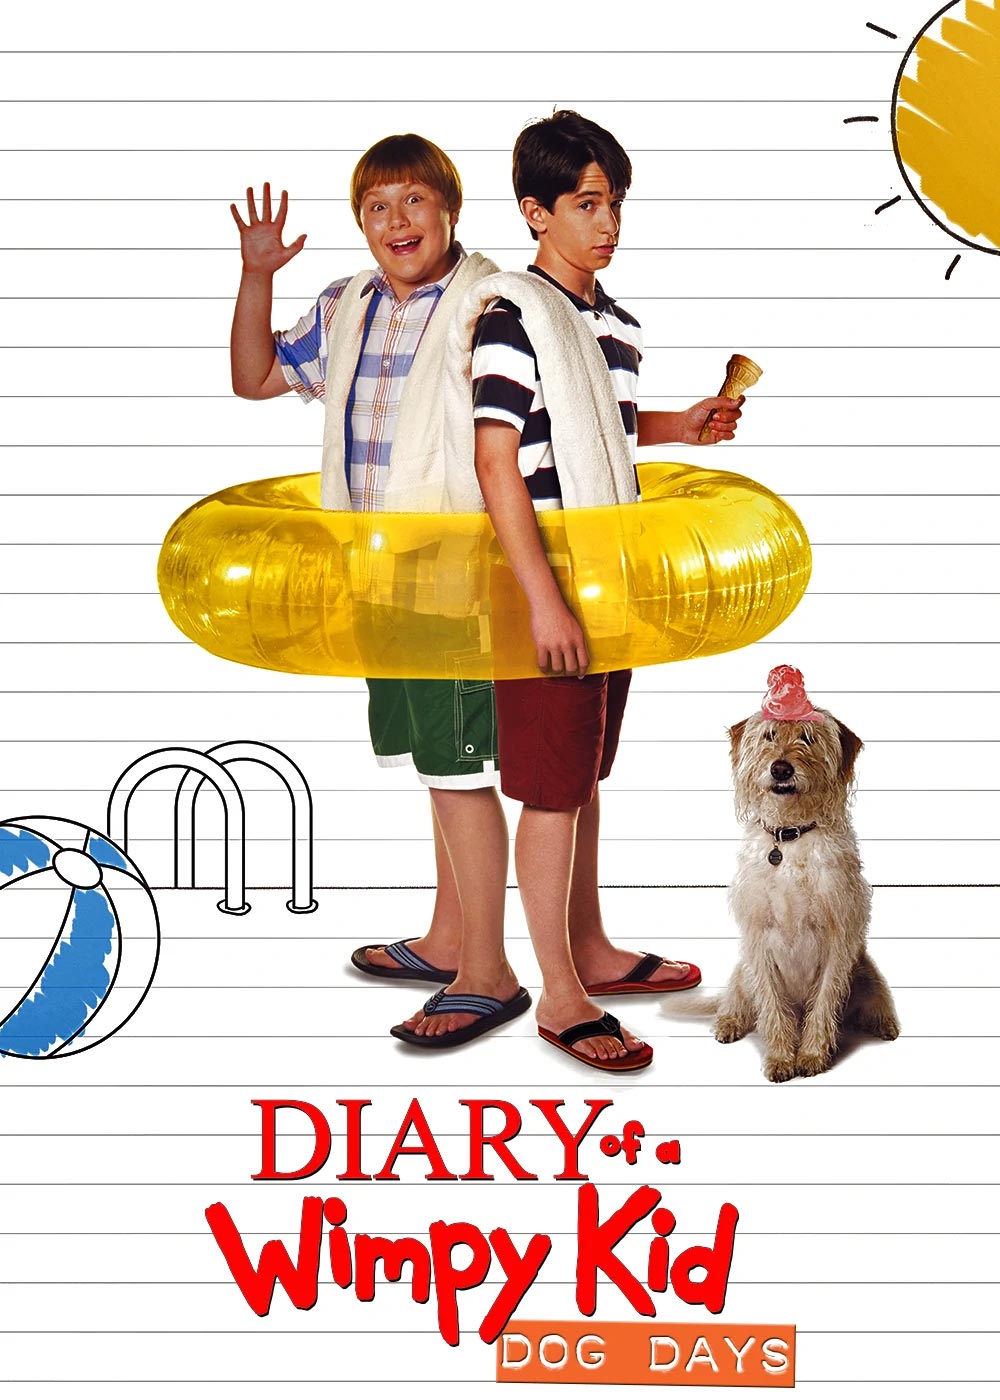 Diary of a Wimpy Kid: Dog Days (2012) - IMDb